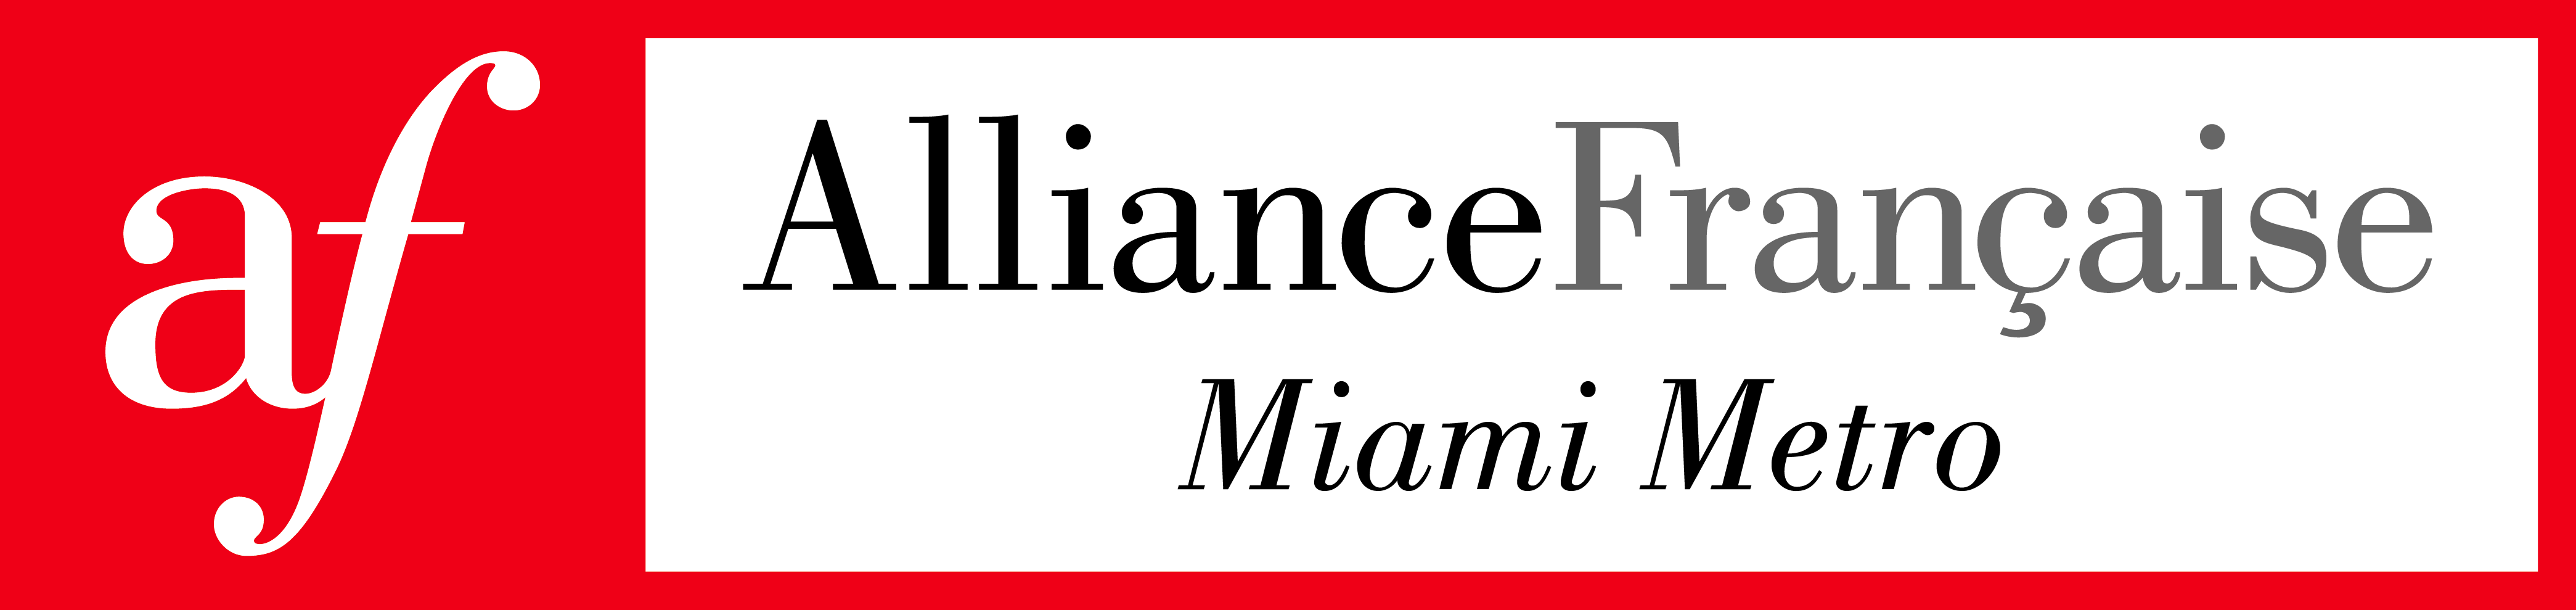 Alliance Francaise Miami Metro Logo